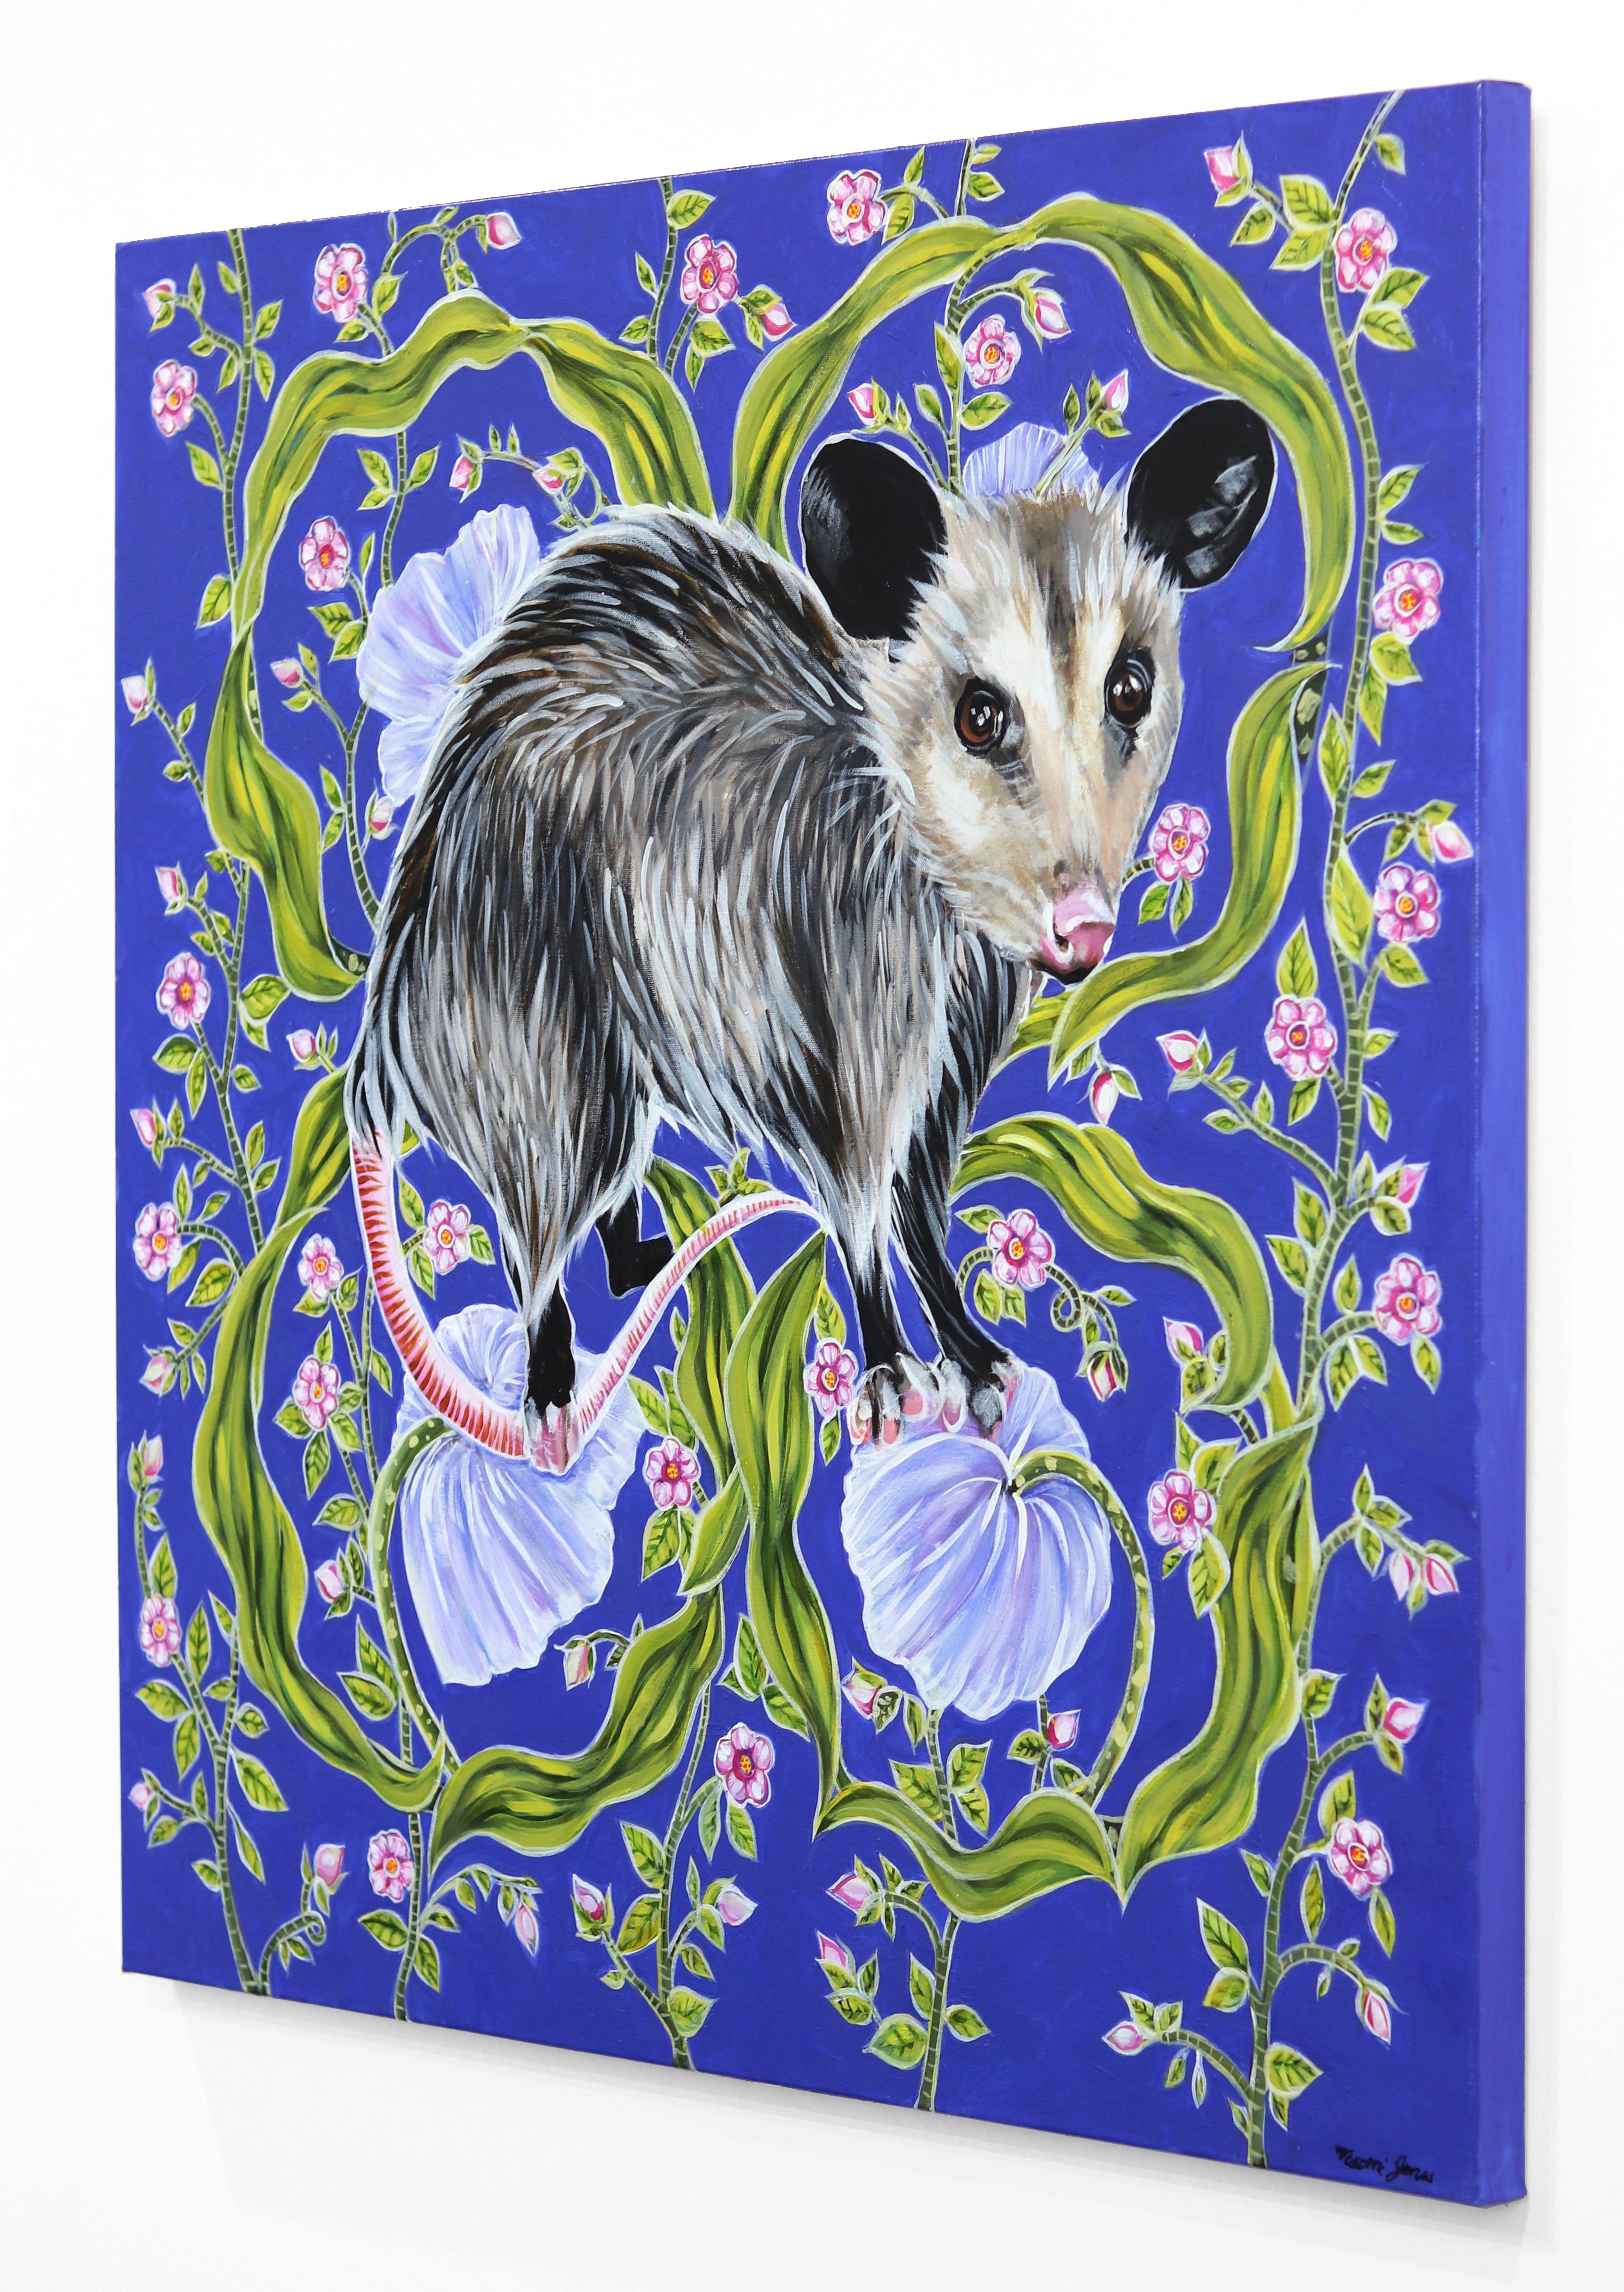 Naomi Jones' reich gemusterte, realistische Gemälde konzentrieren sich auf den Schutz der gefährdeten Tierwelt. Jones findet Katharsis im Malen seelenvoller Tiere. Die Porträts gefährdeter Arten, die in der nordamerikanischen Landschaft heimisch